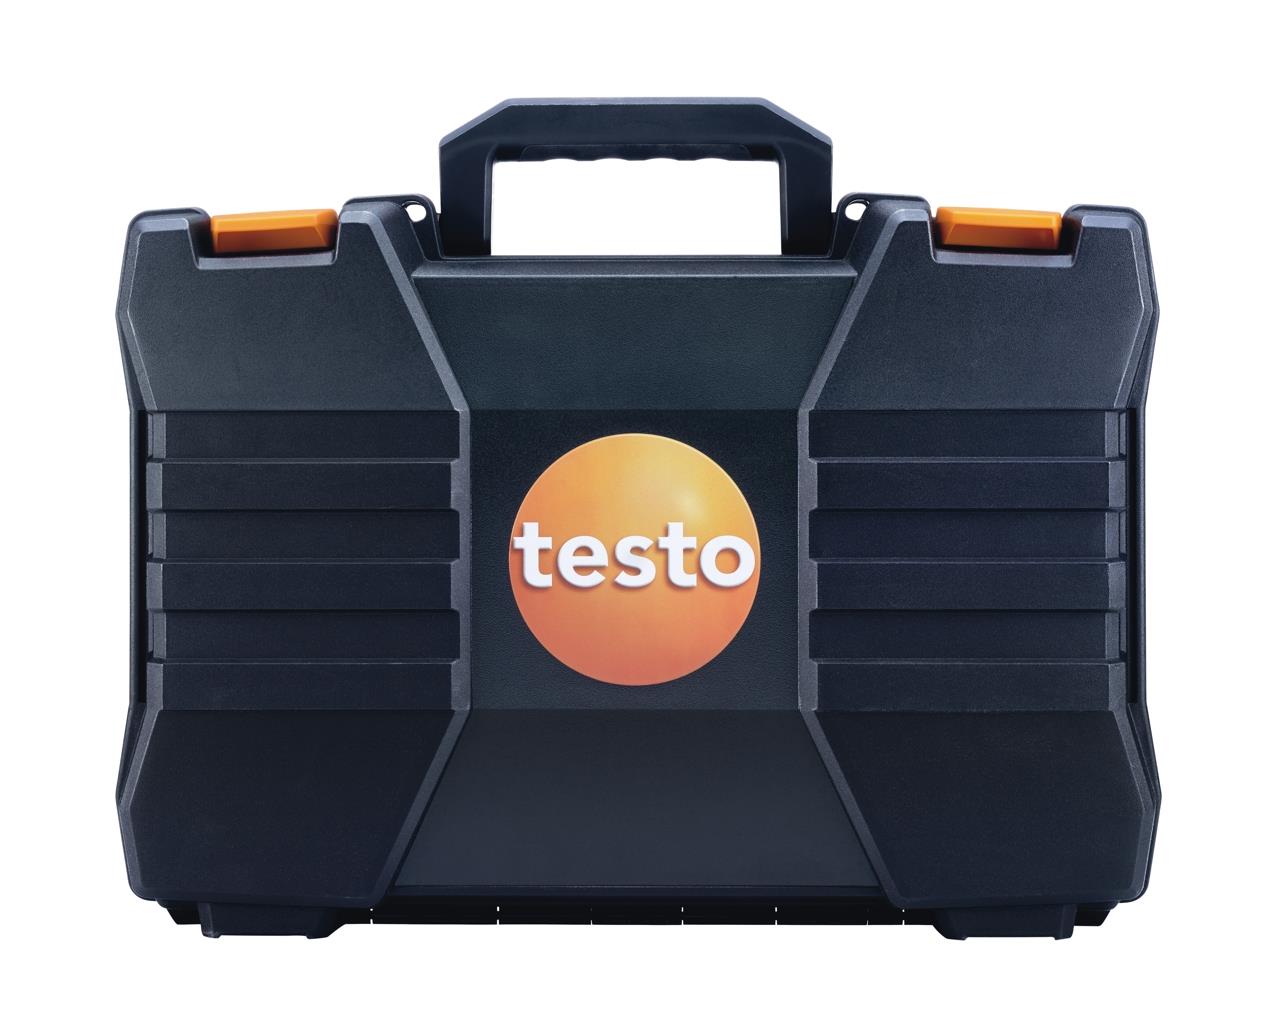 Testo Basis-Systemkoffer m. doppeltem Boden für Modell 3xx online kaufen